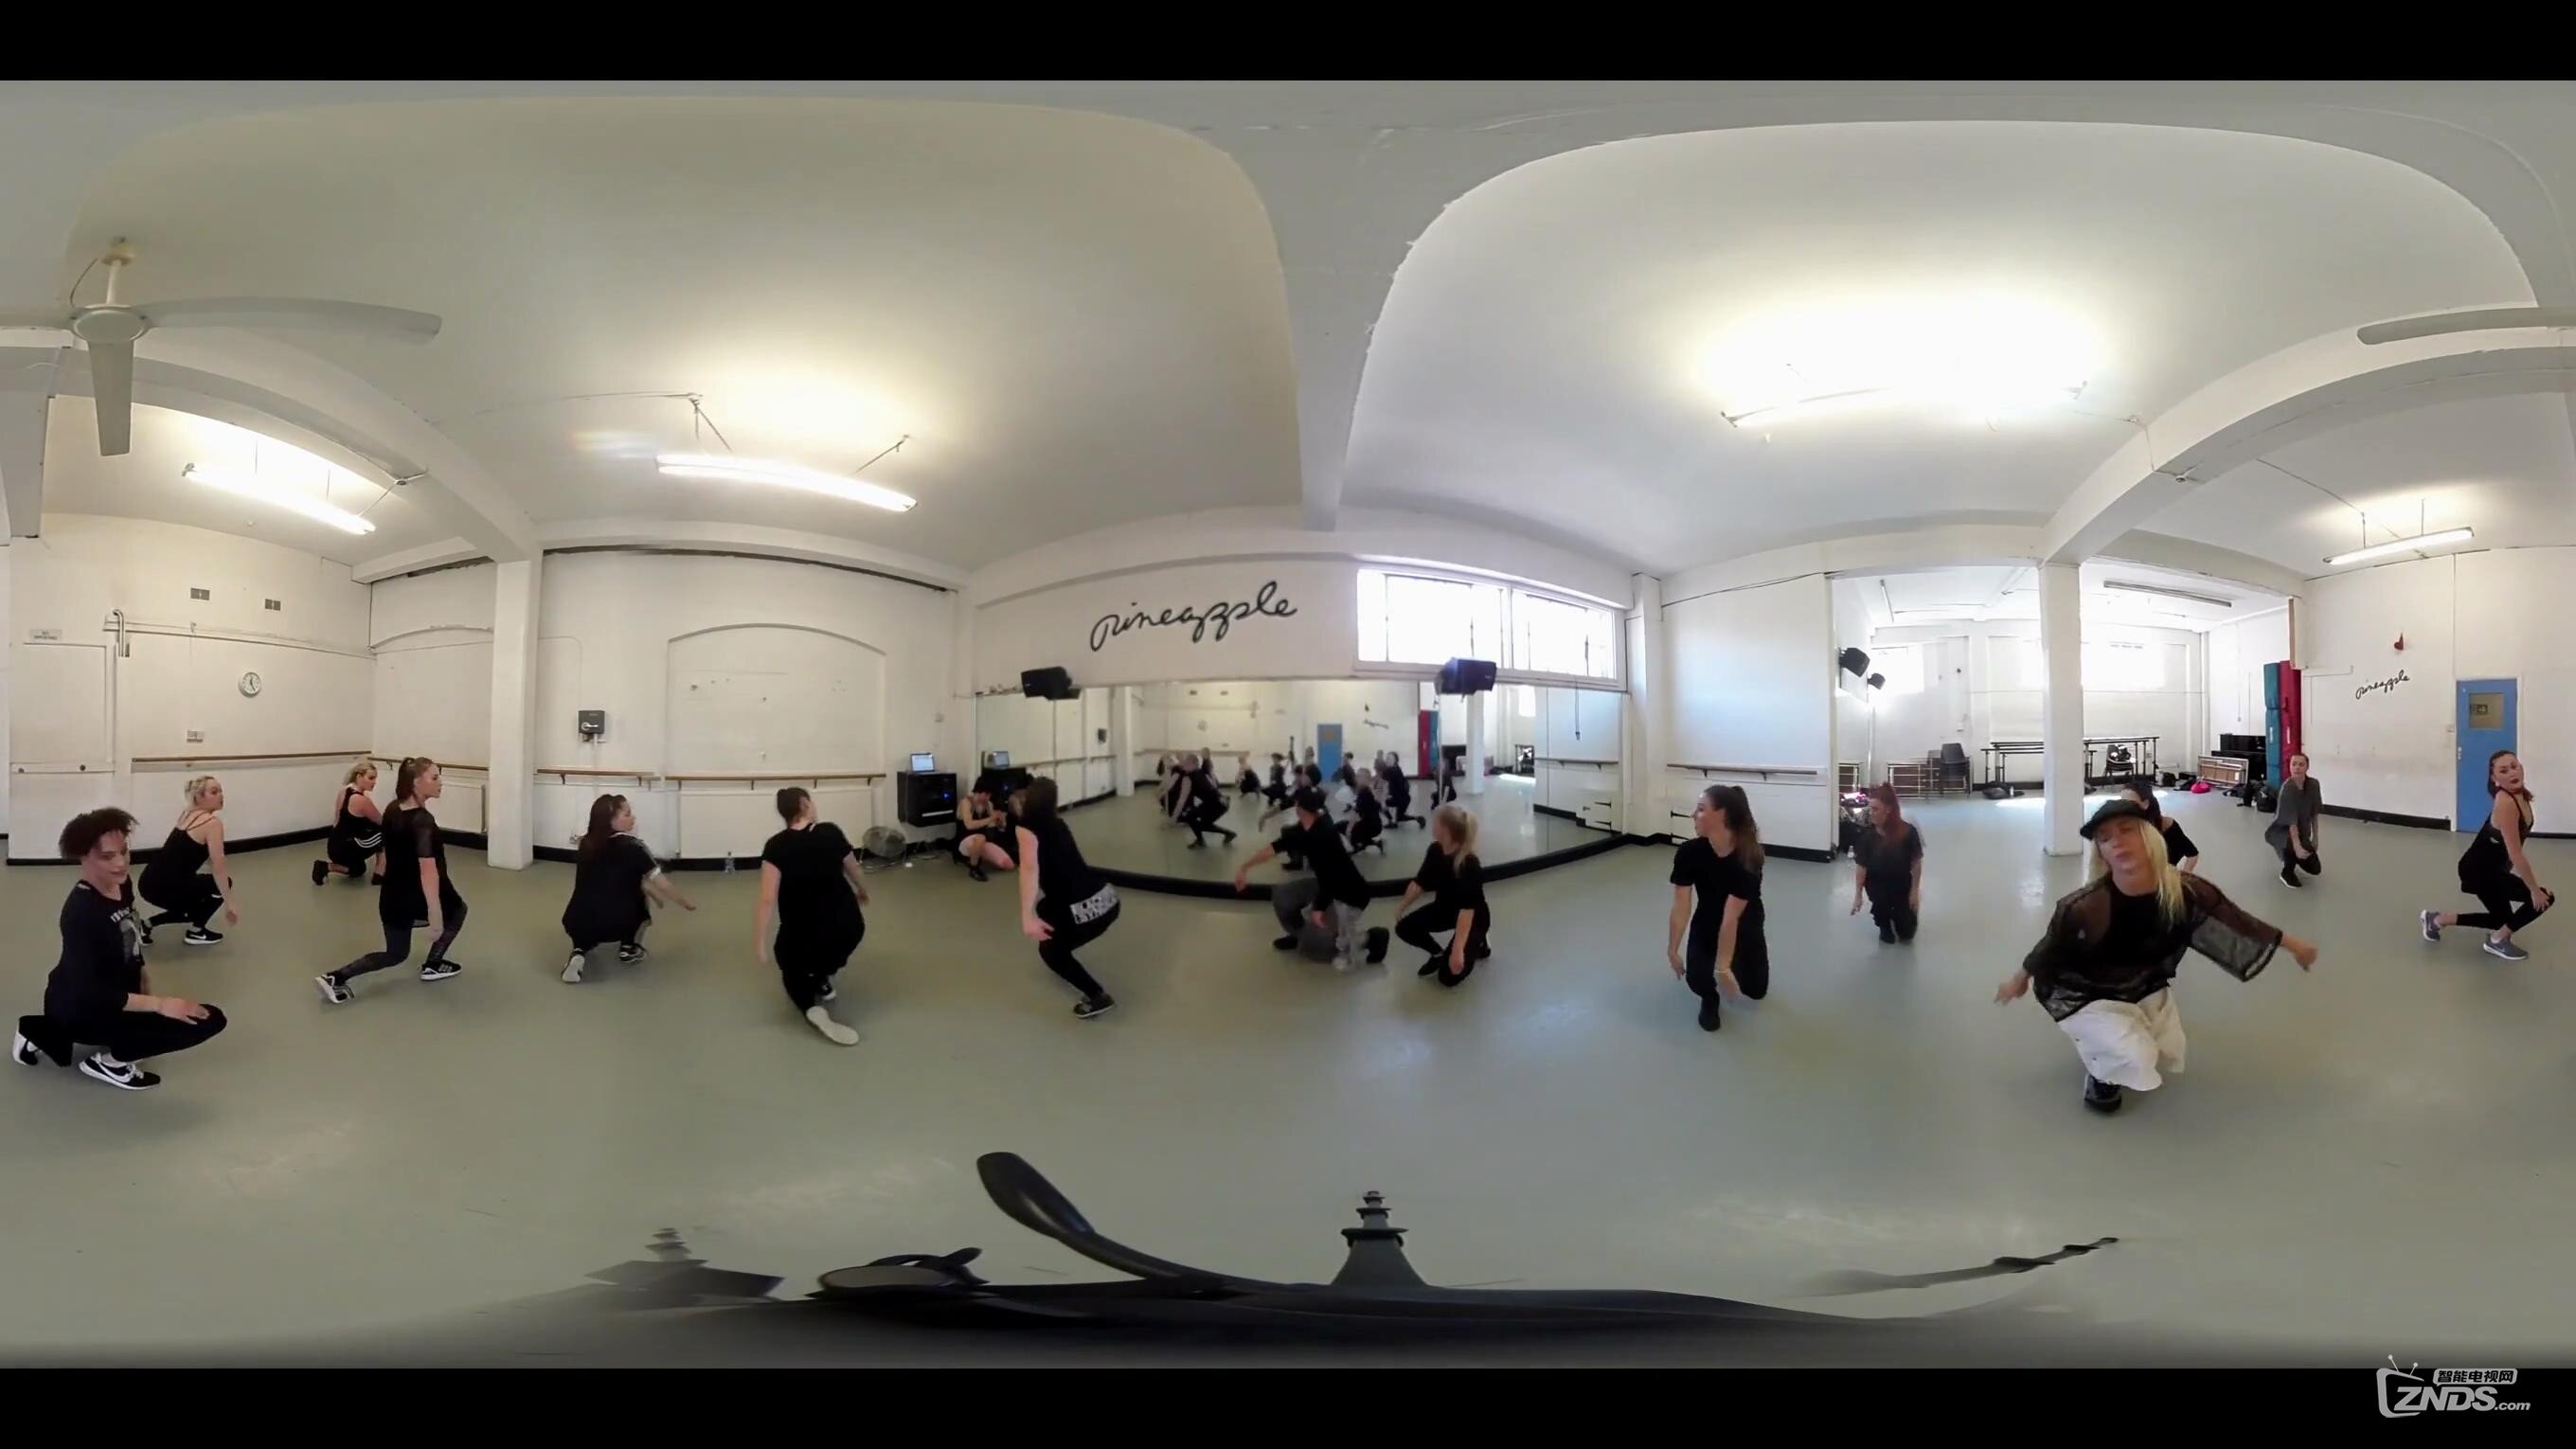 【360度VR全景视频】菠萝舞团HIPHOP舞蹈教